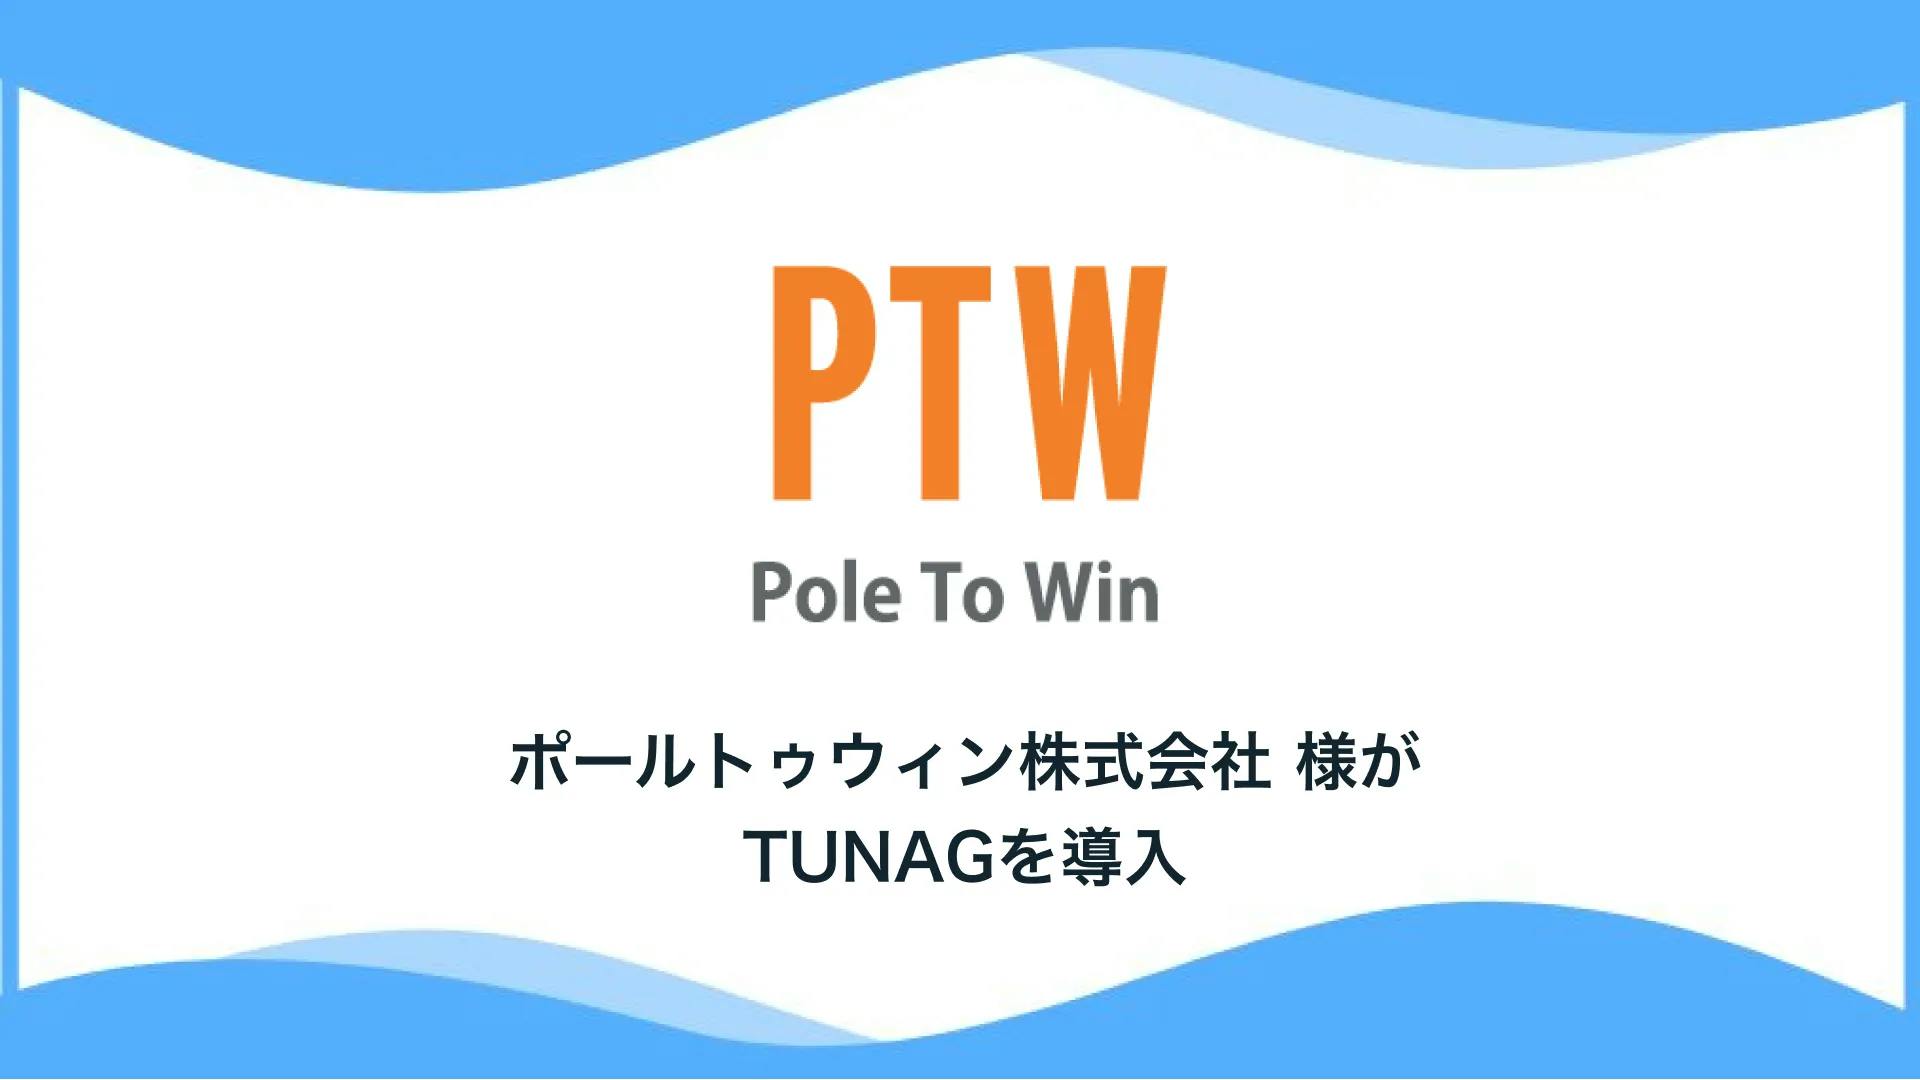 デバッグやネットサポート等のサービスを国内外問わず提供するポールトゥウィン株式会社様、「TUNAG」を導入